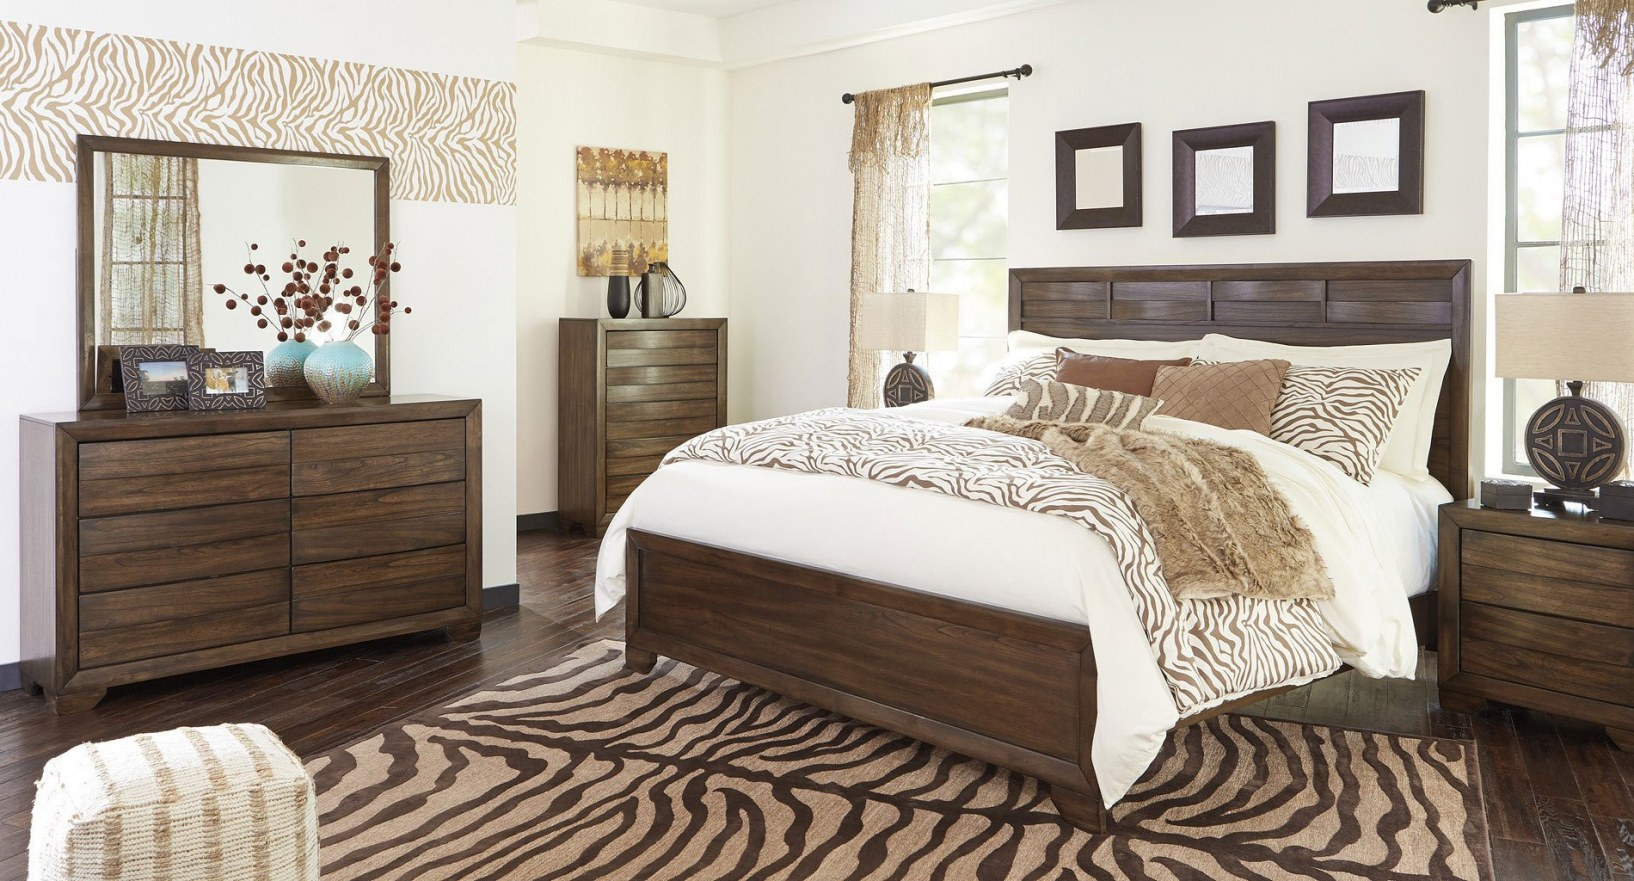 Td Furniture Bedroom Sets Best Furniture For All Home Types regarding measurements 1634 X 881